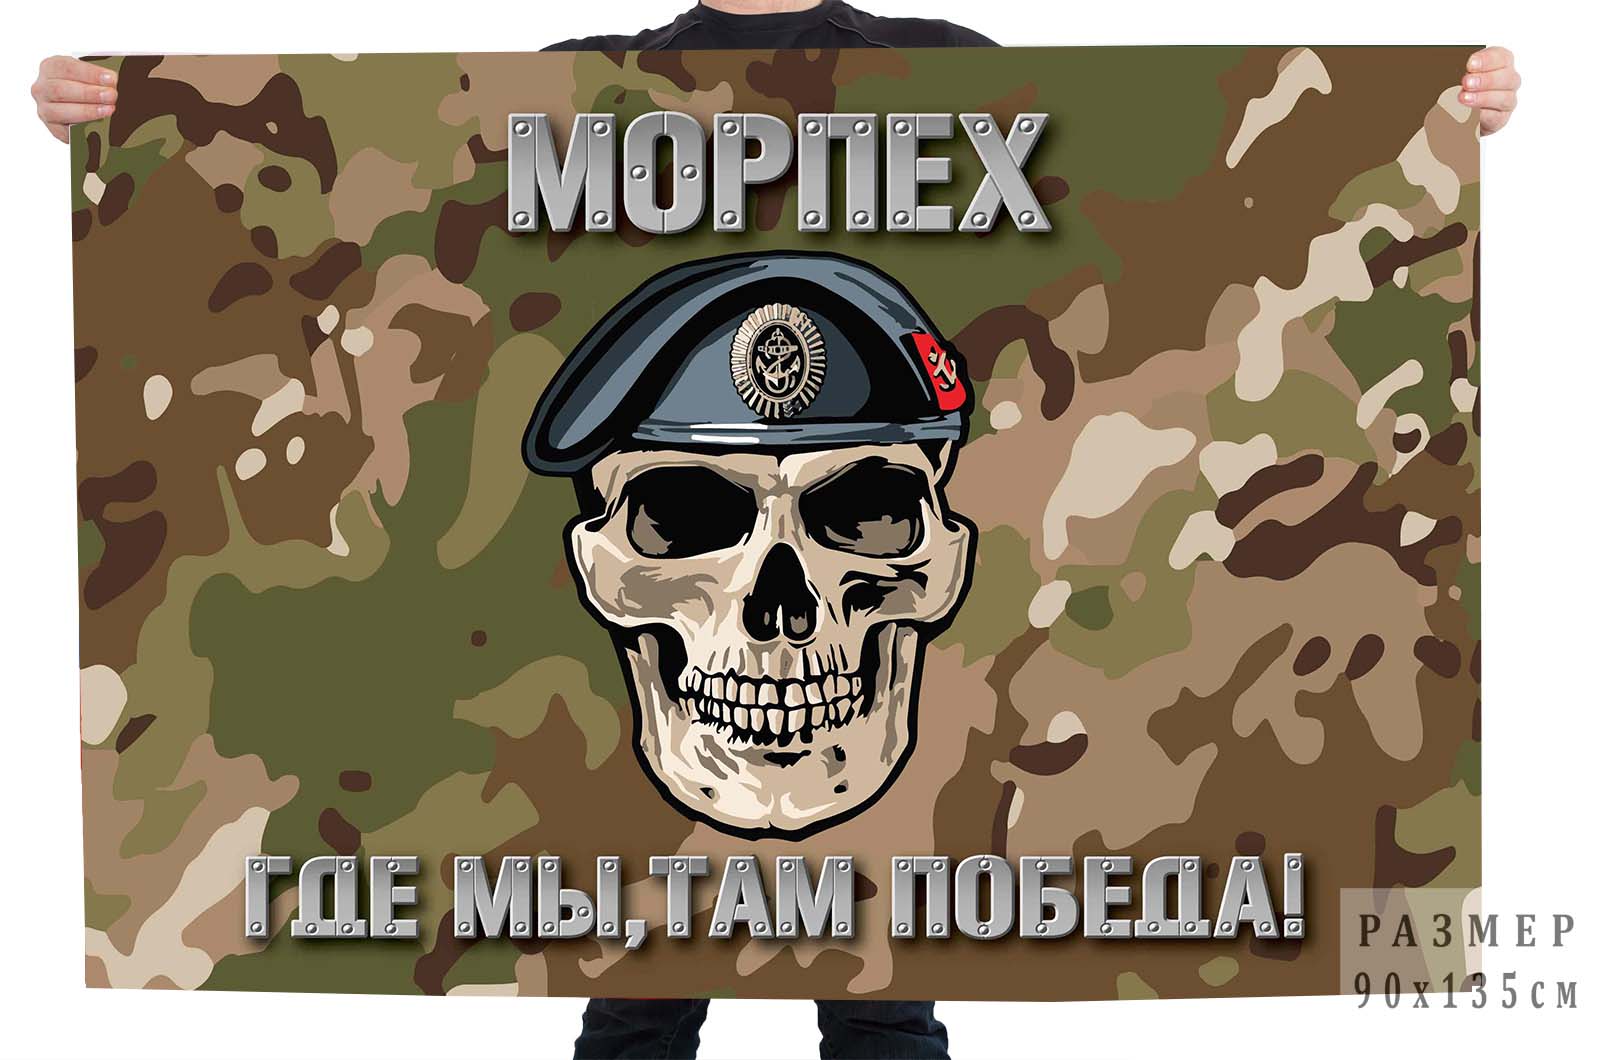 Купить флаг Морпеха с девизом "Где мы, там победа!"